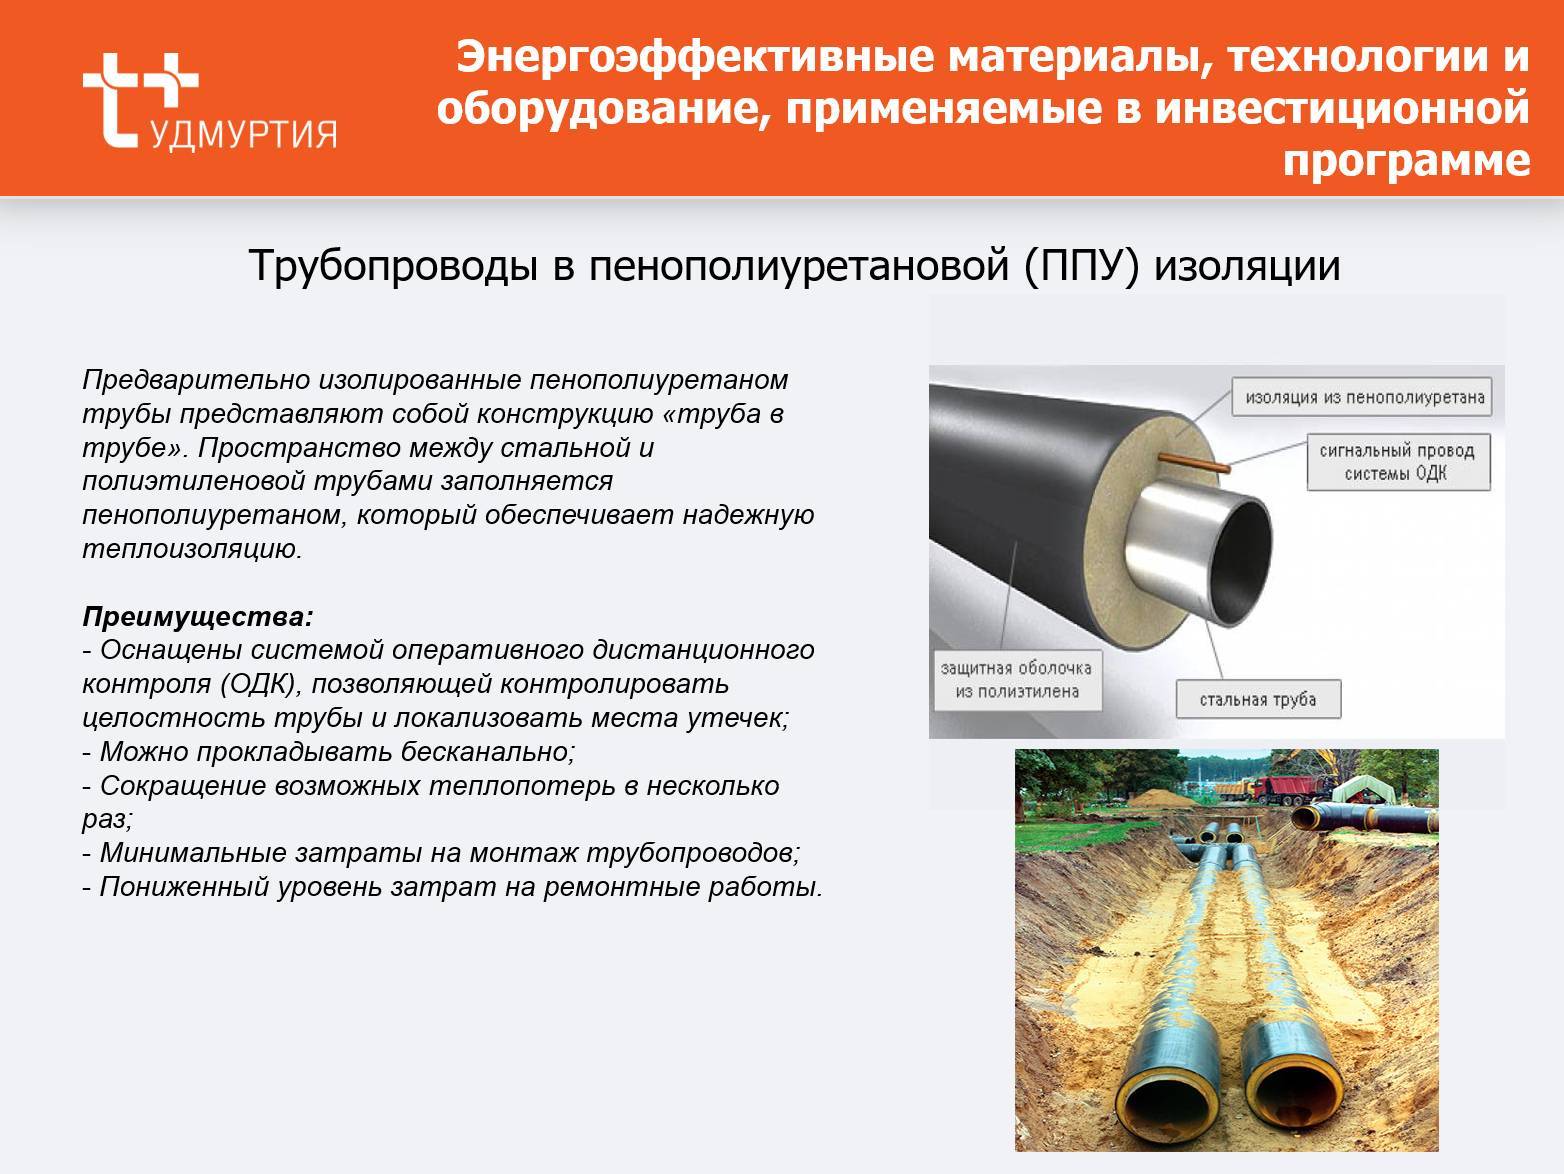 Технические характеристики и производство труб в ппу изоляции